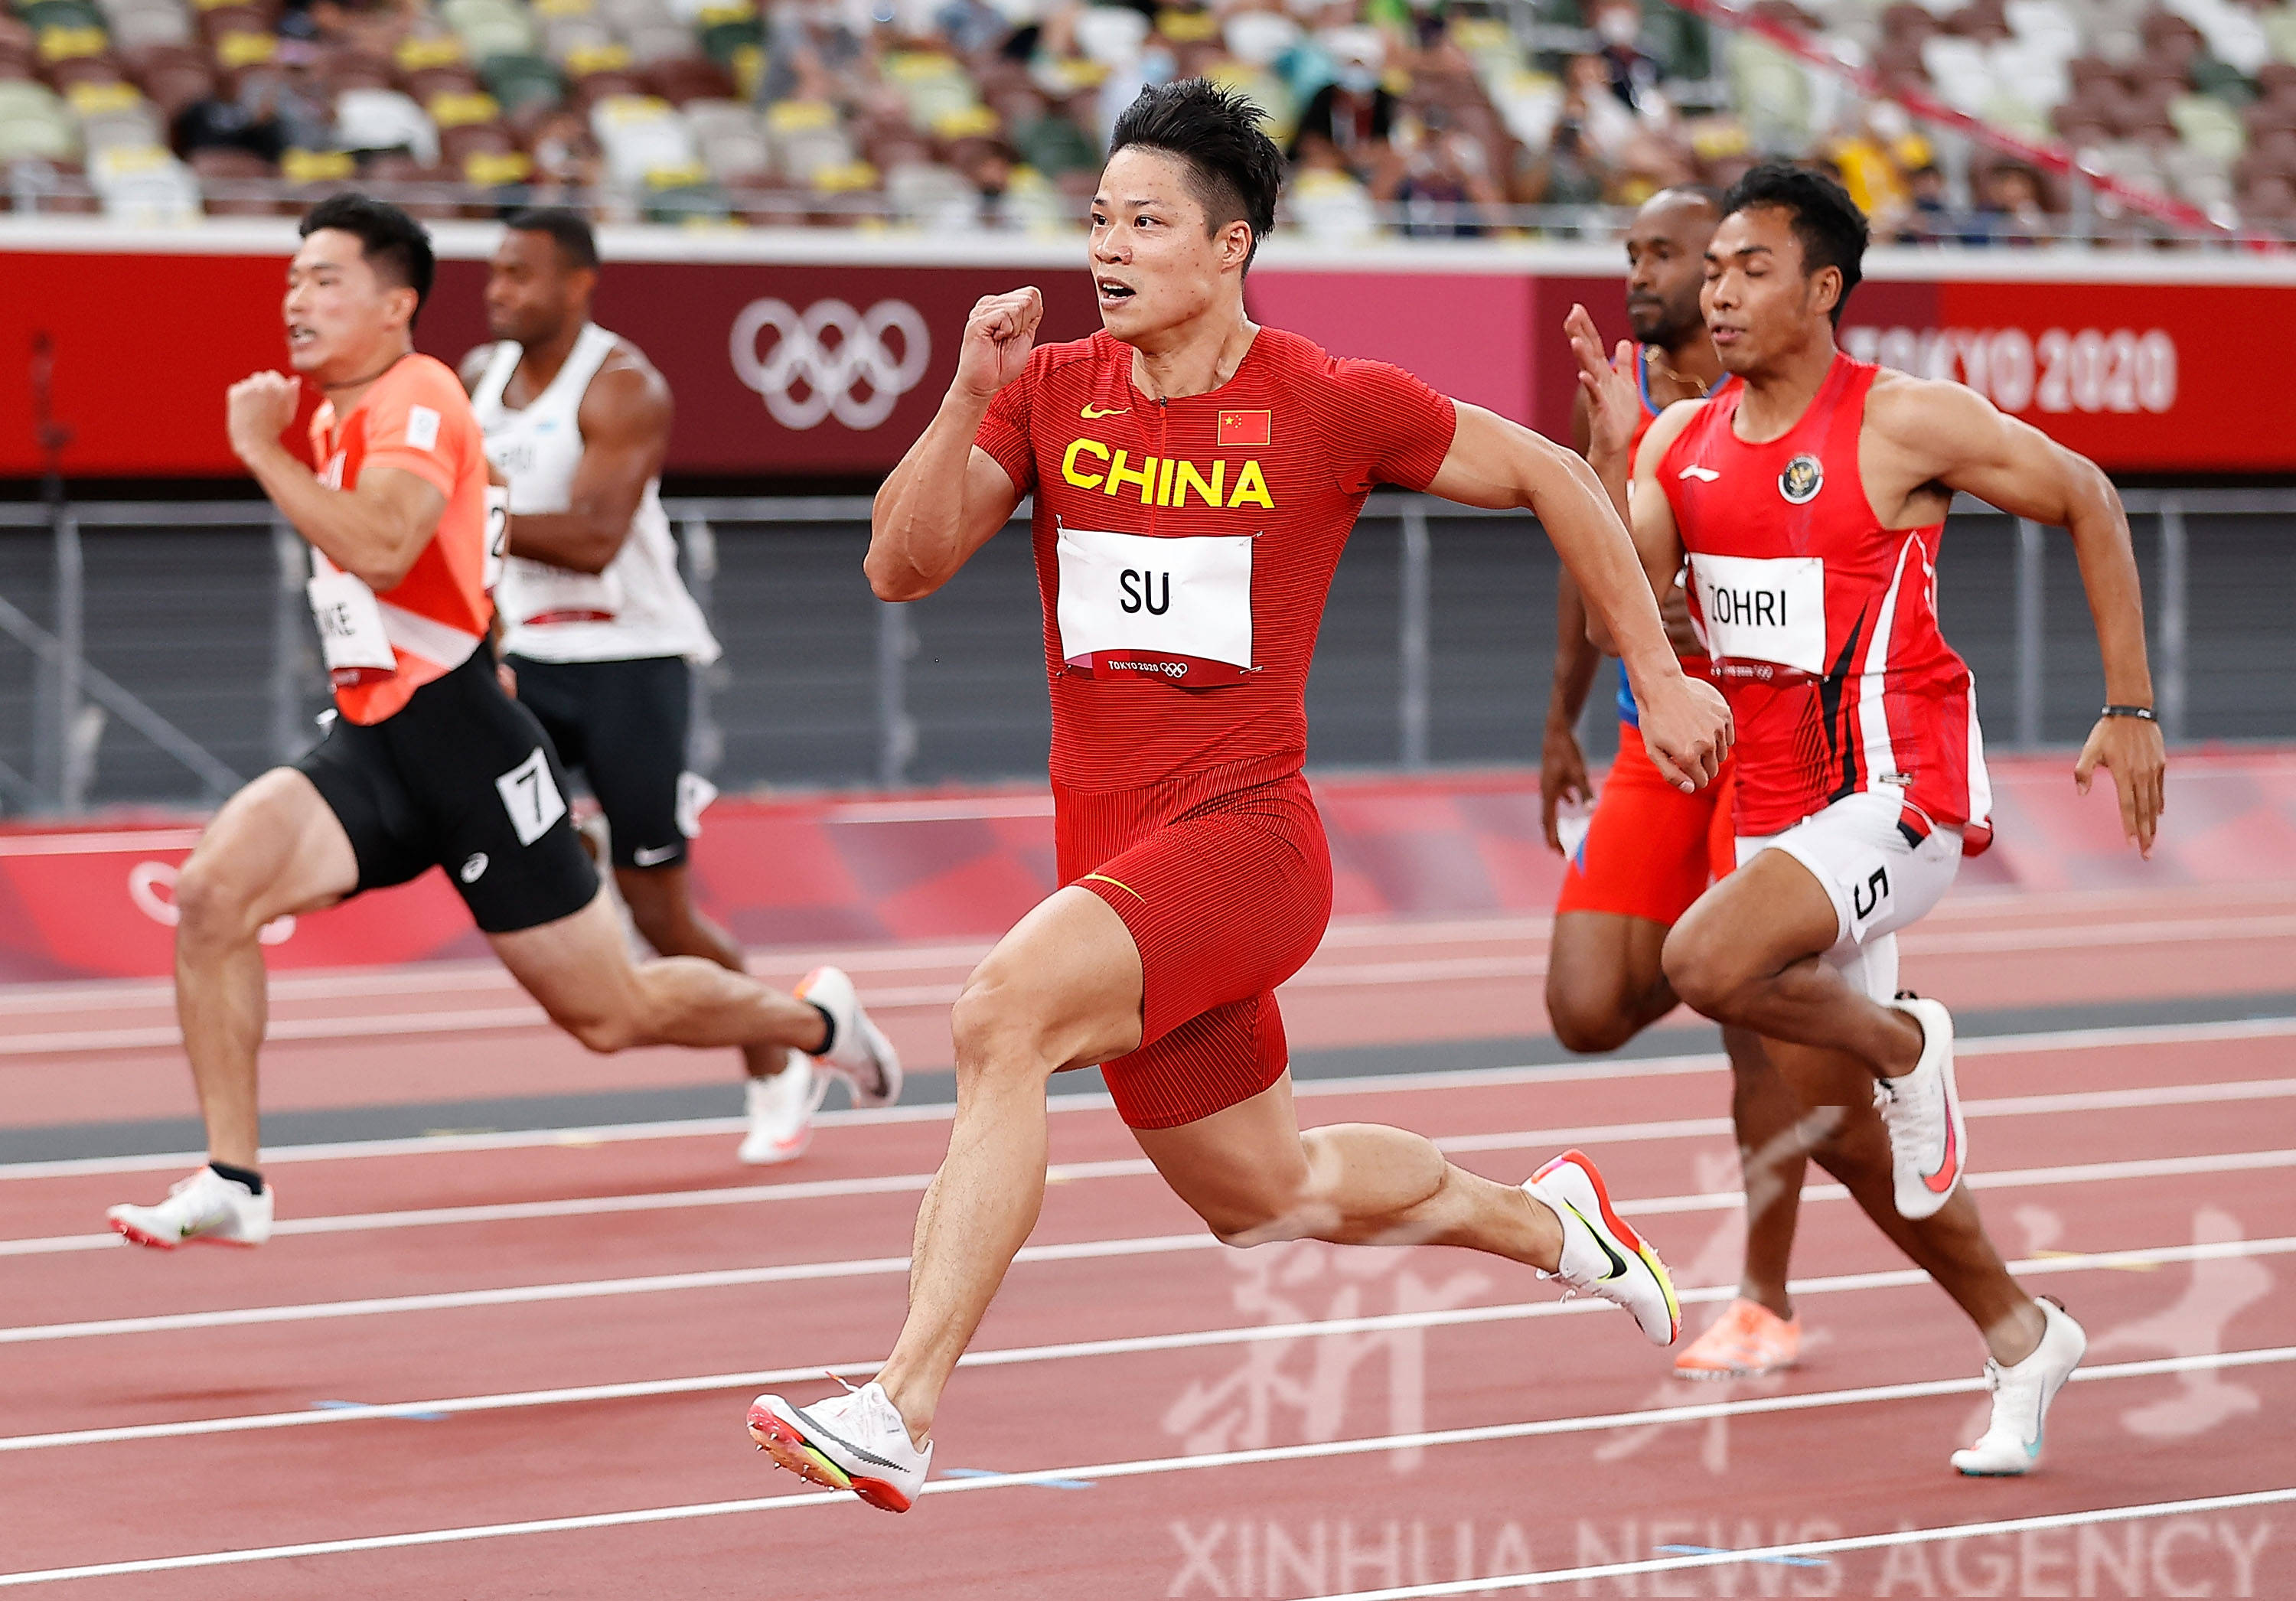 新华社记者 张传奇 摄当日,东京奥运会田径比赛继续在东京新国立竞技